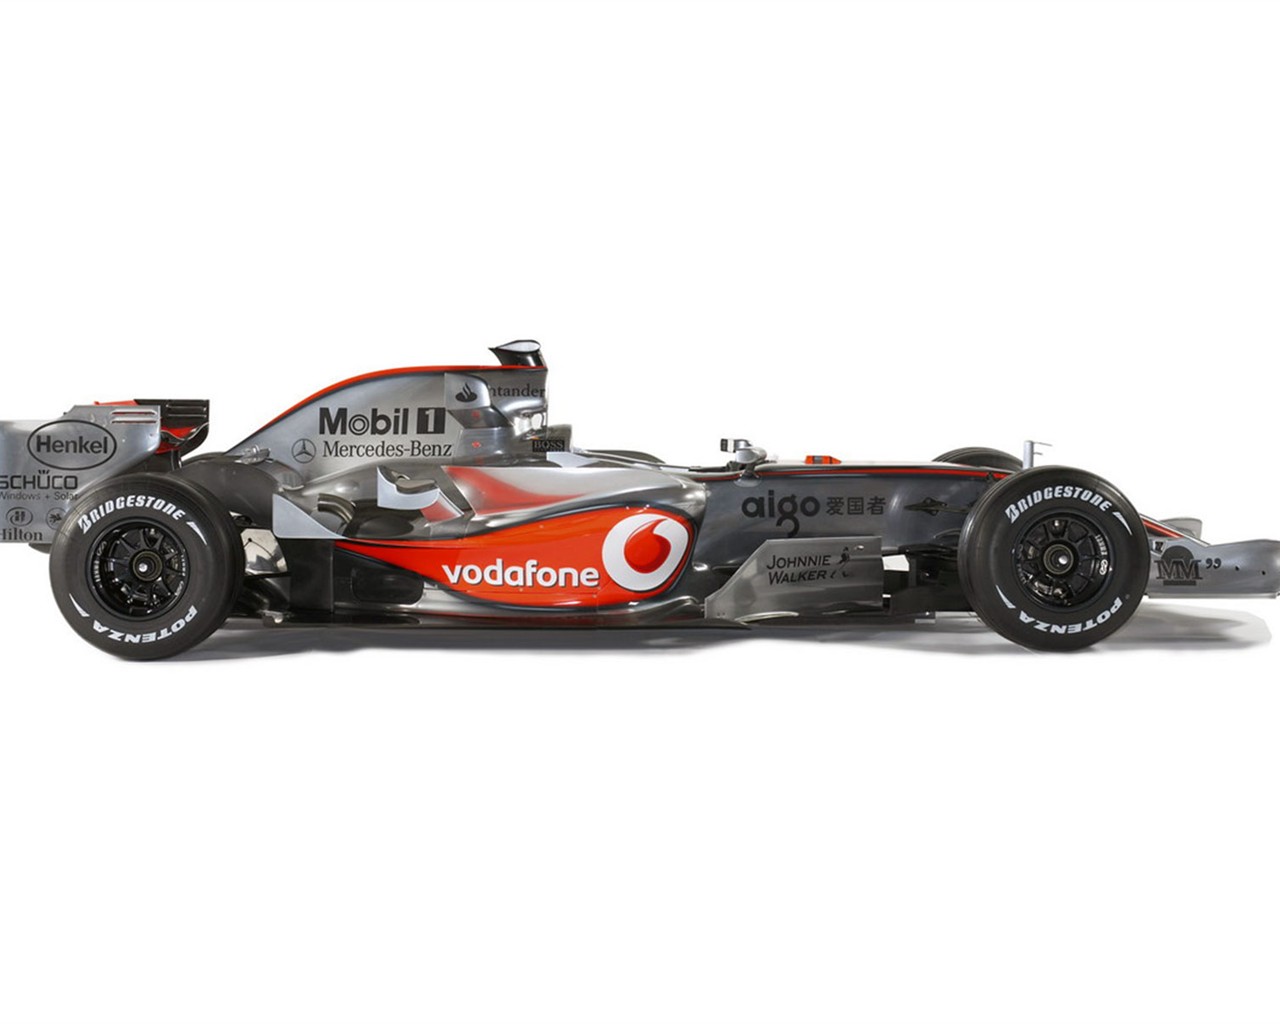  F1のレースのHD画像は、アルバム #12 - 1280x1024